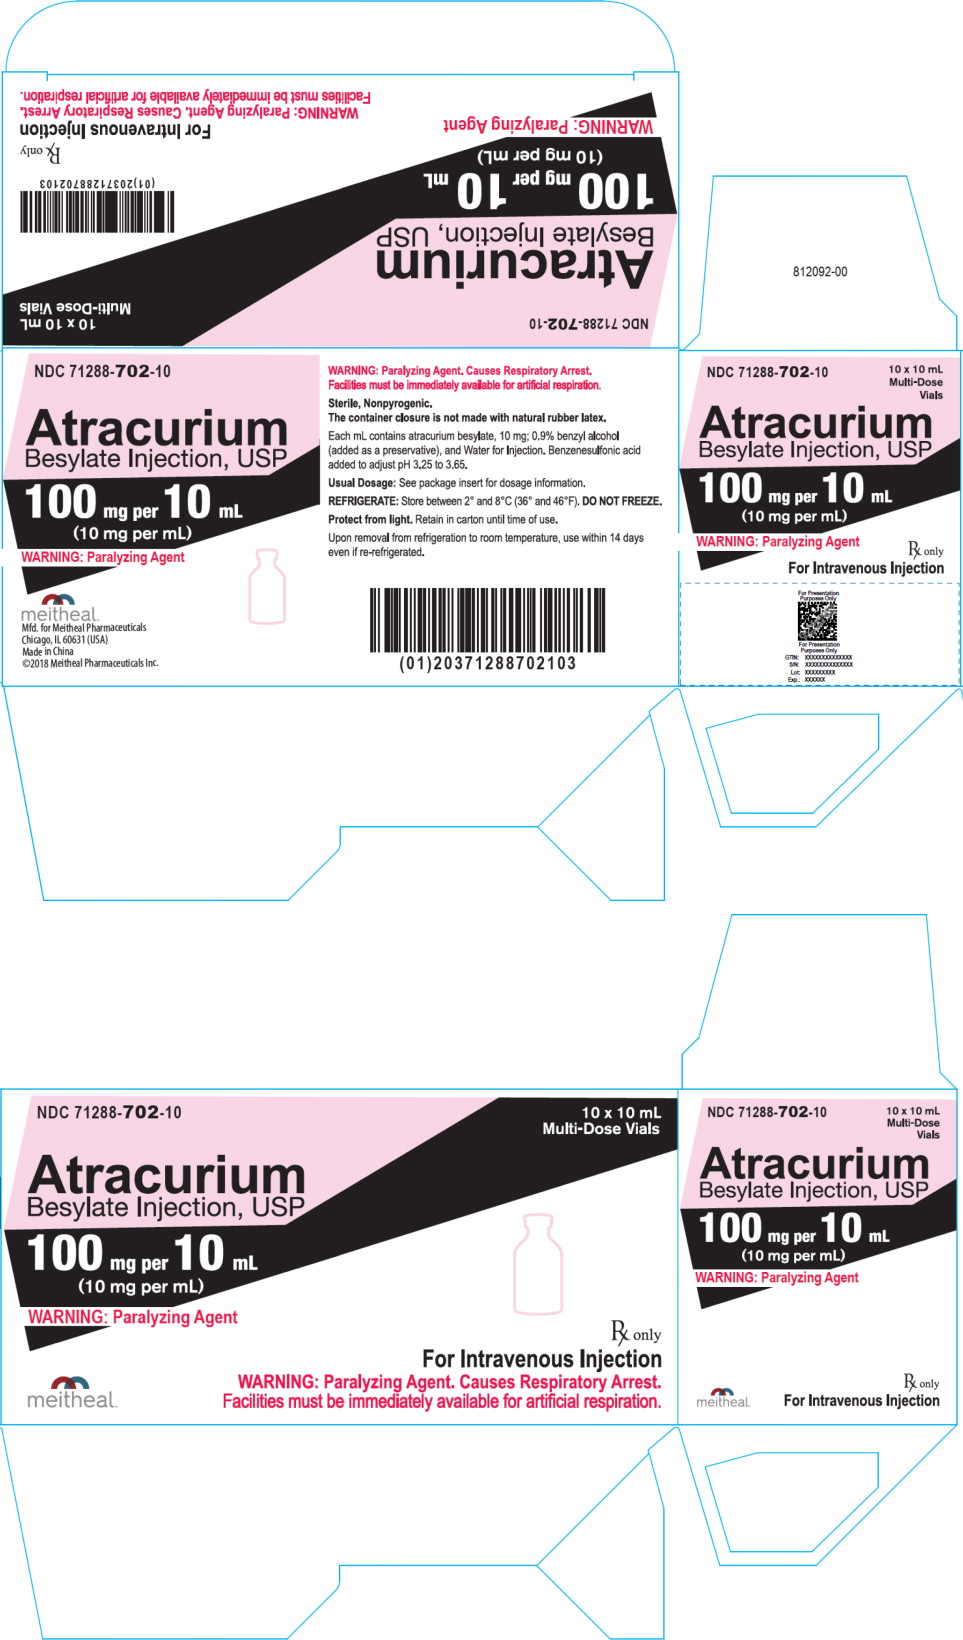 Principal Display Panel – Atracurium Besylate Injection, USP 100 mg Carton
